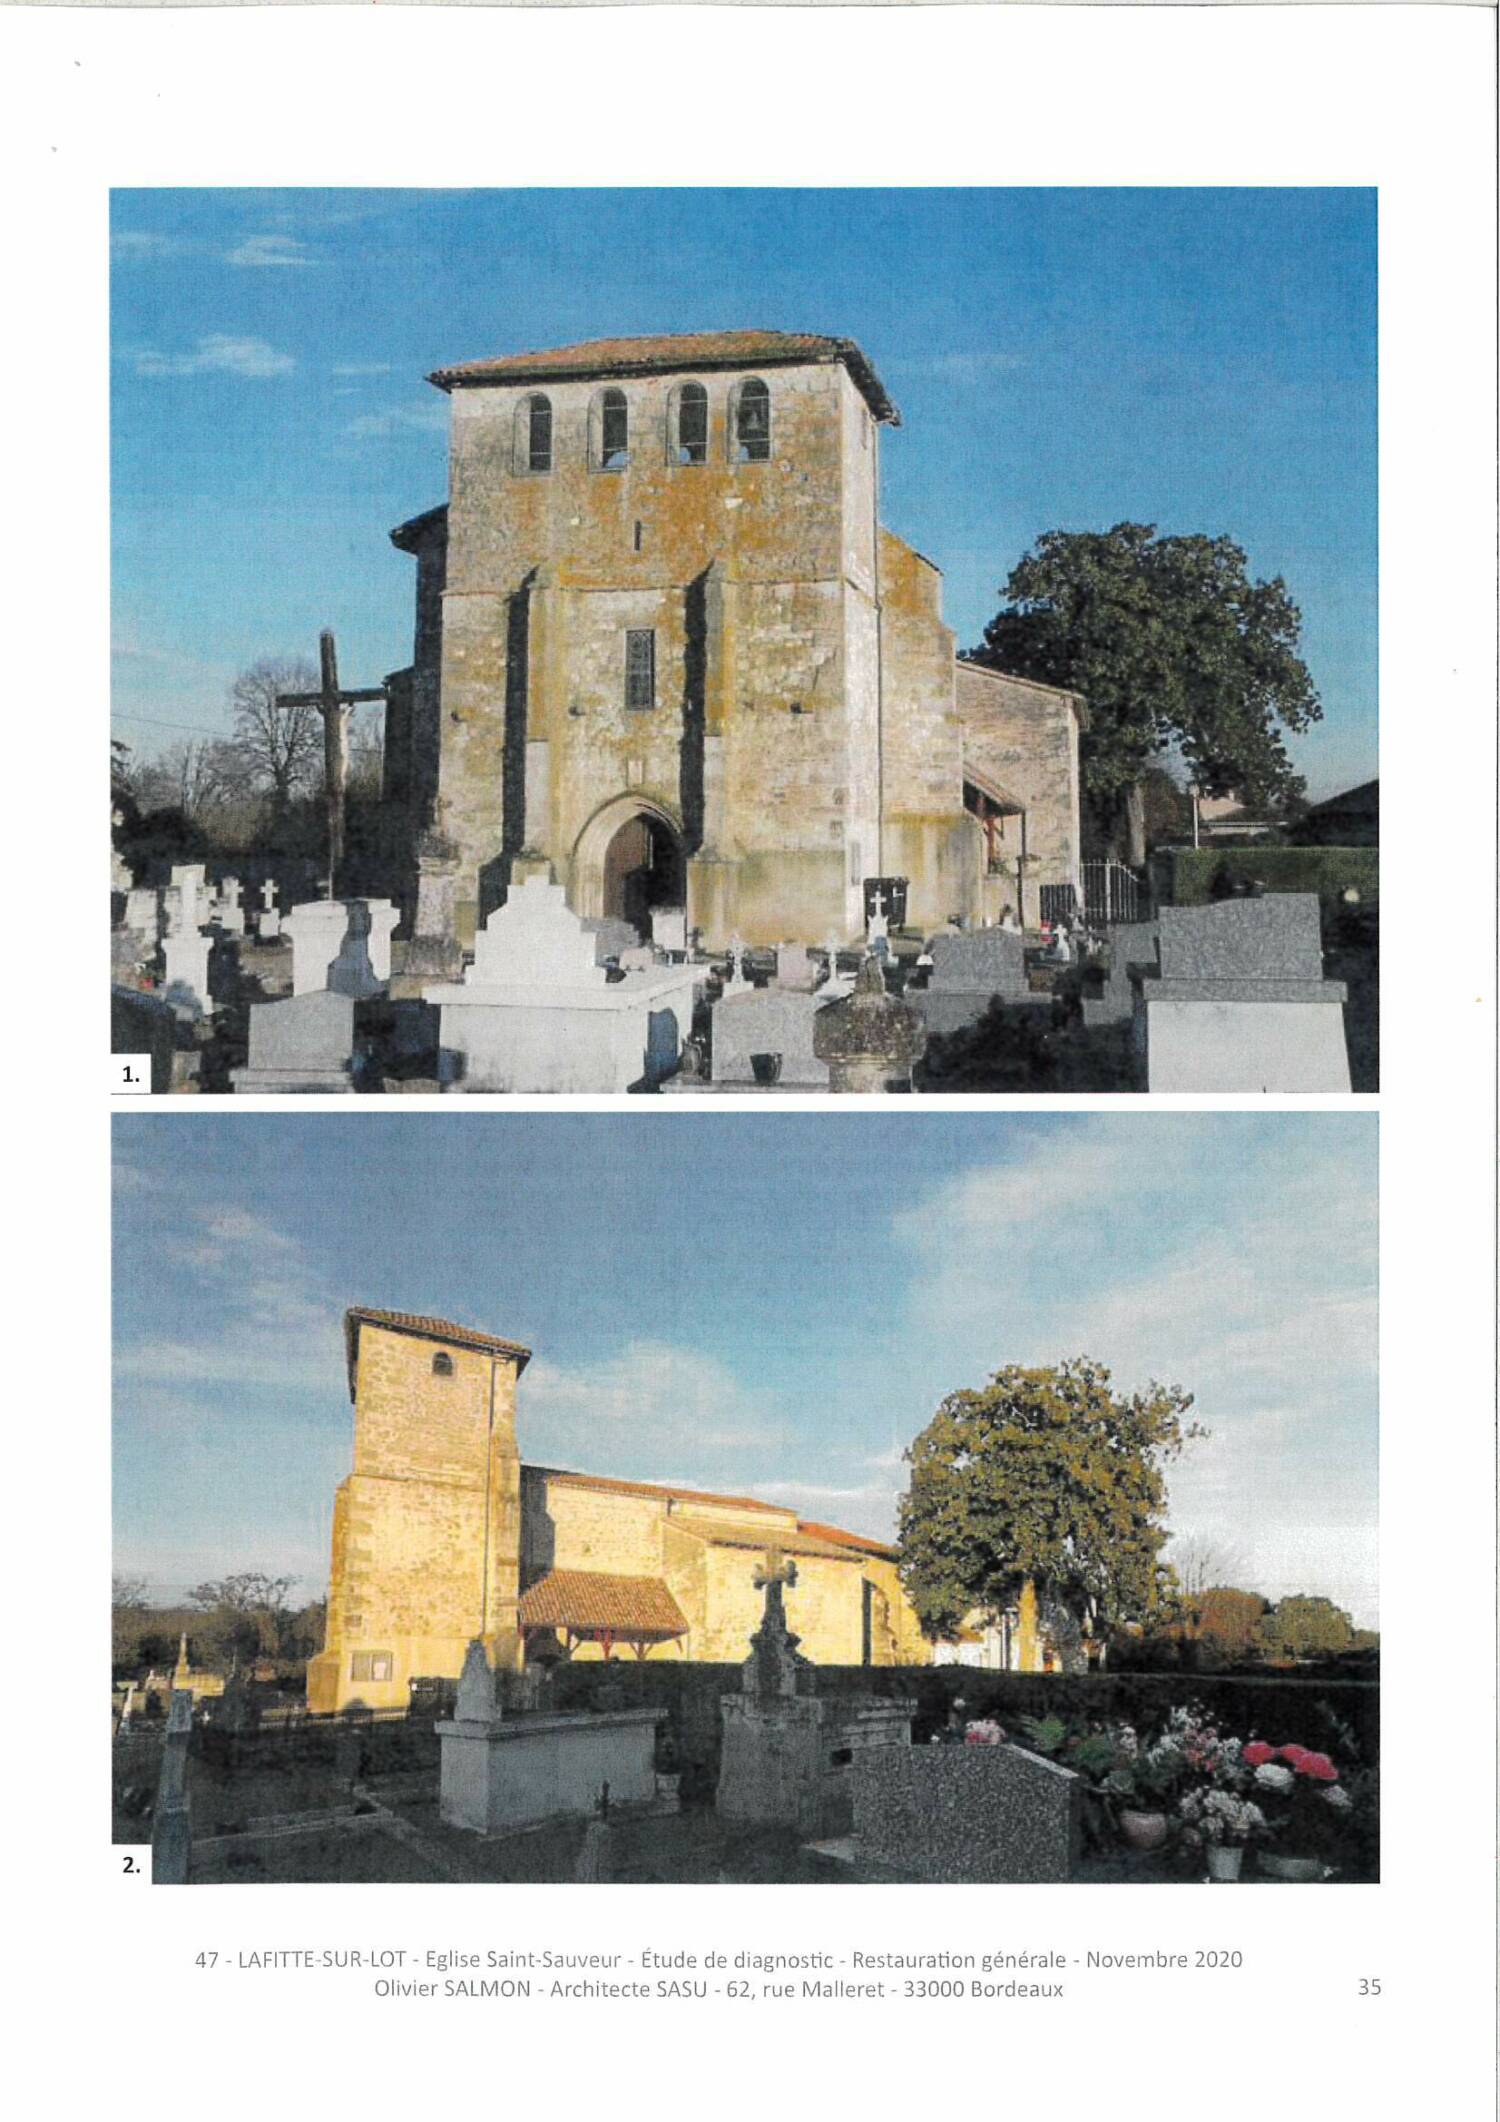 Lafitte-sur-Lot (47) - Église Saint-Sauveur